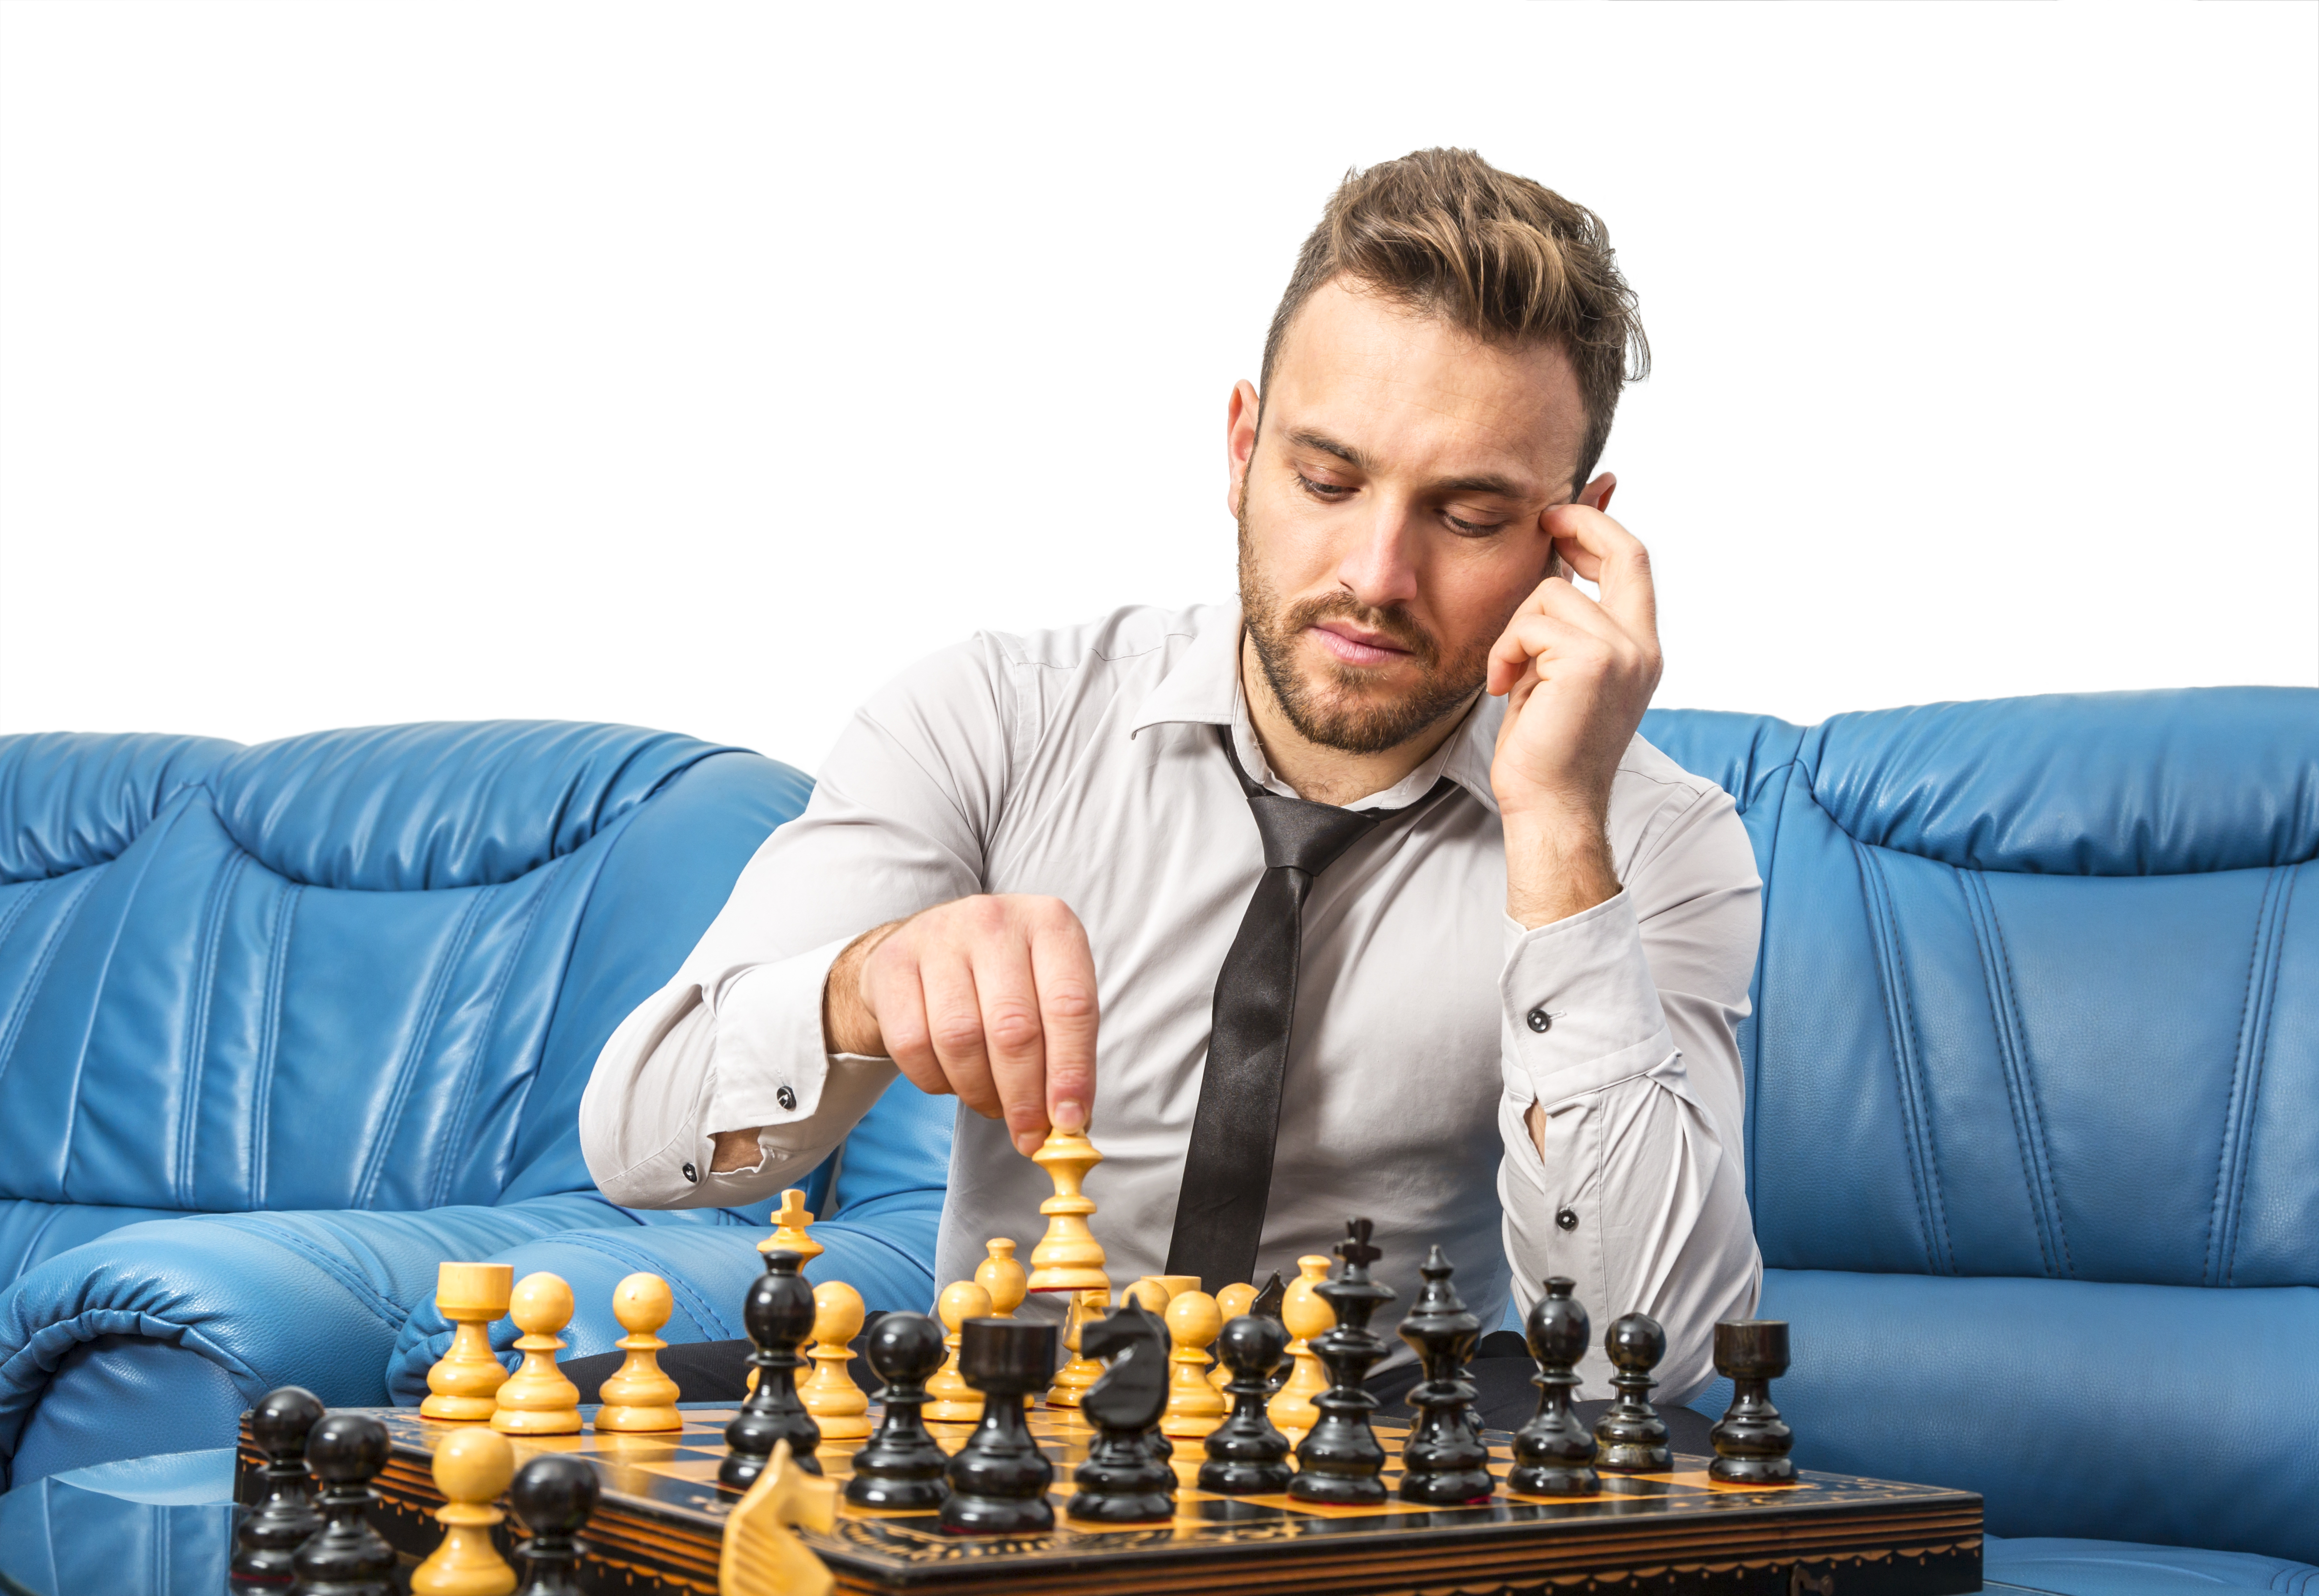 Играют лицо. Мужчина играющий в шахматы. Мужчина с шахматами. Мужчина за шахматной доской. Фотосессия с шахматами мужчина.